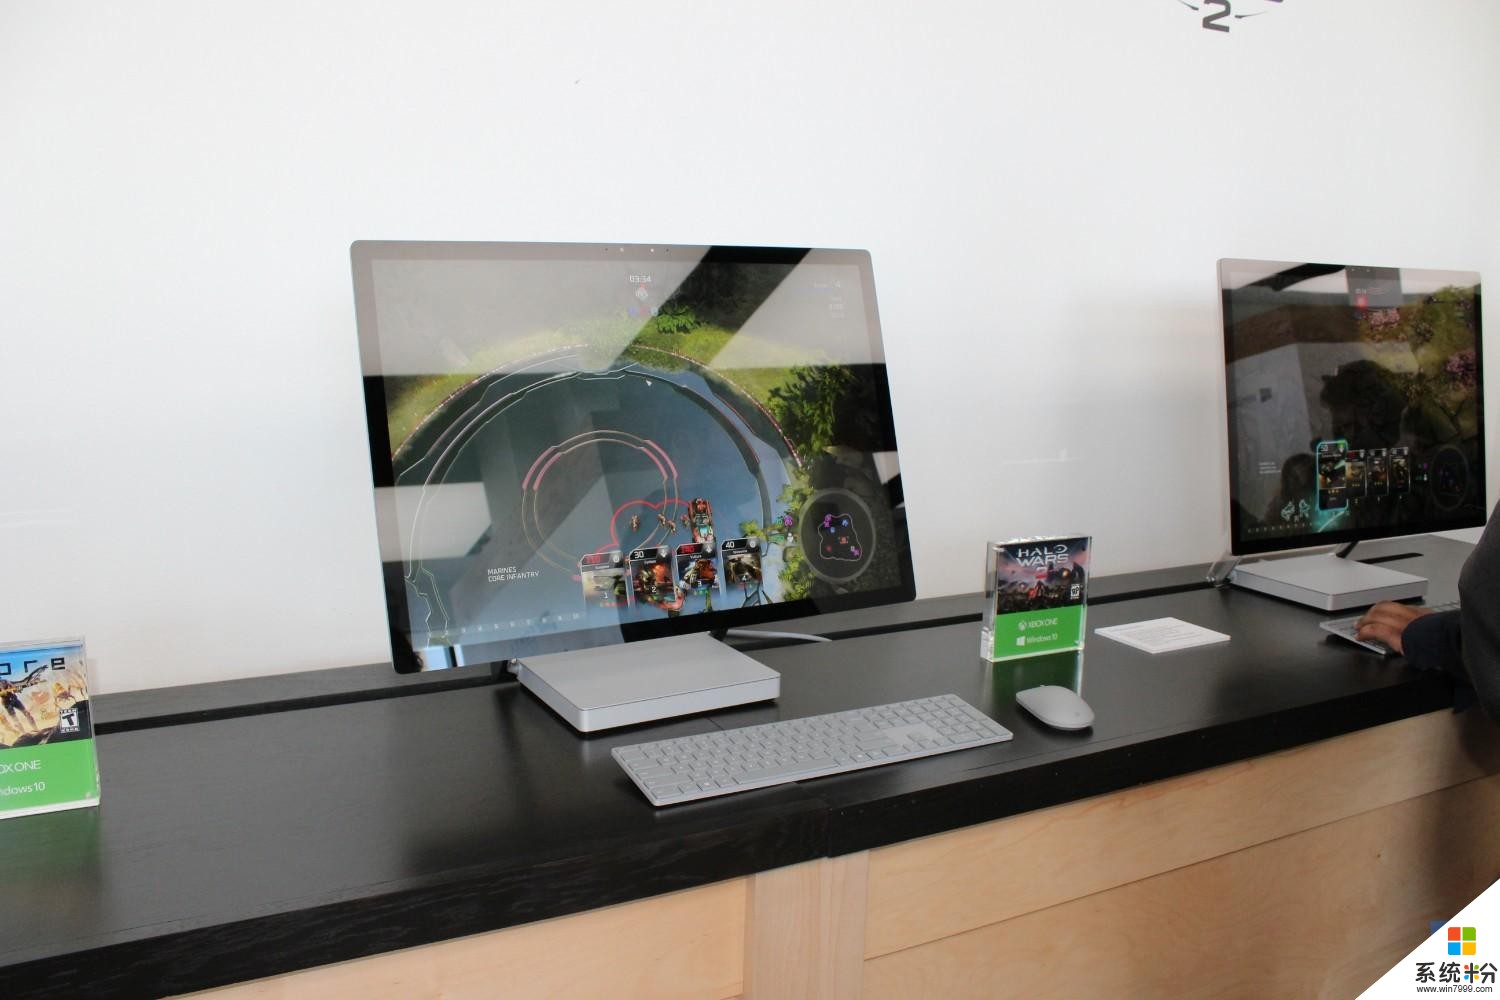 微软Surface Studio斩获IDSA设计金奖, Xbox One S获铜奖(1)